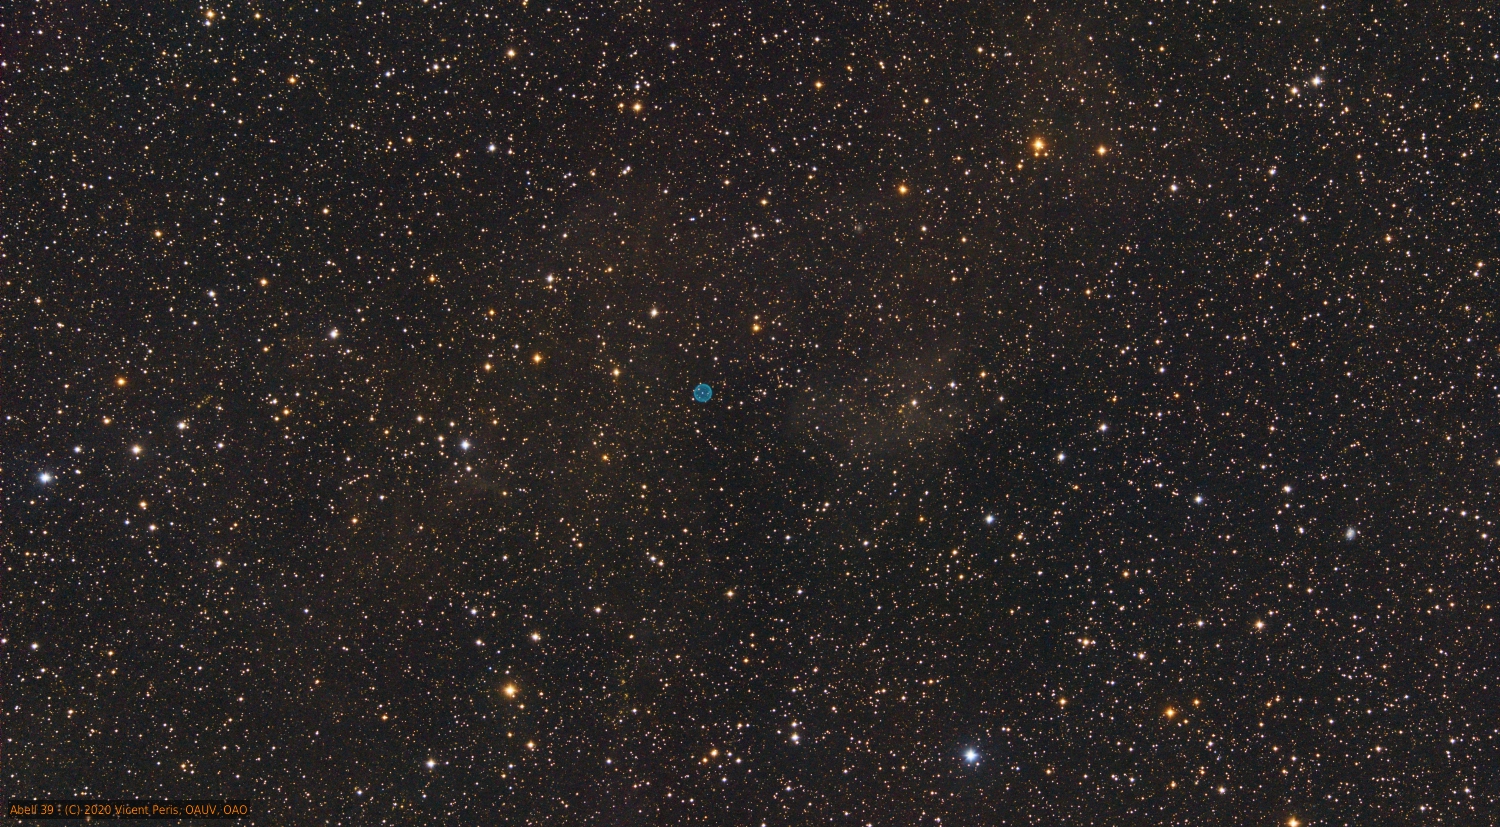 https://observatori.uv.es/images/Abell39_Skywalker_1500.jpg